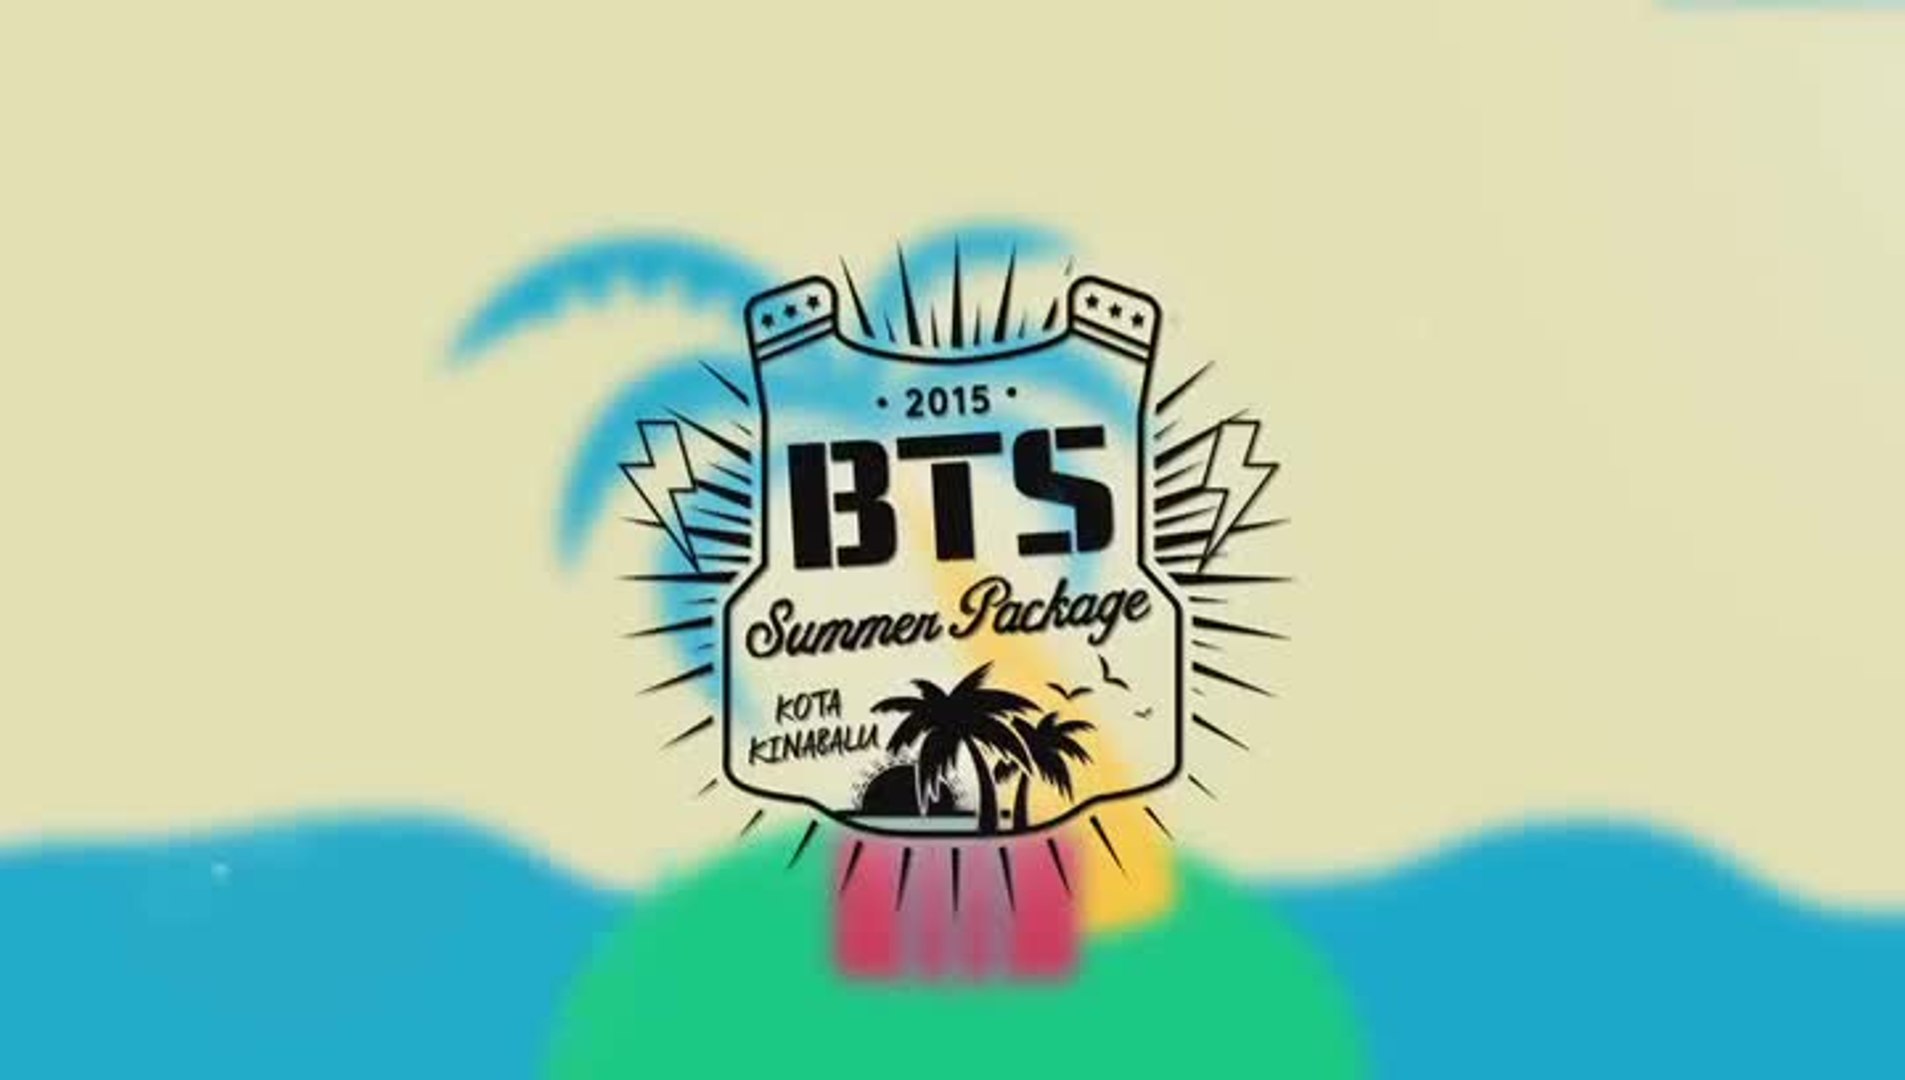 2015 BTS Summer Package in Kota Kinabalu